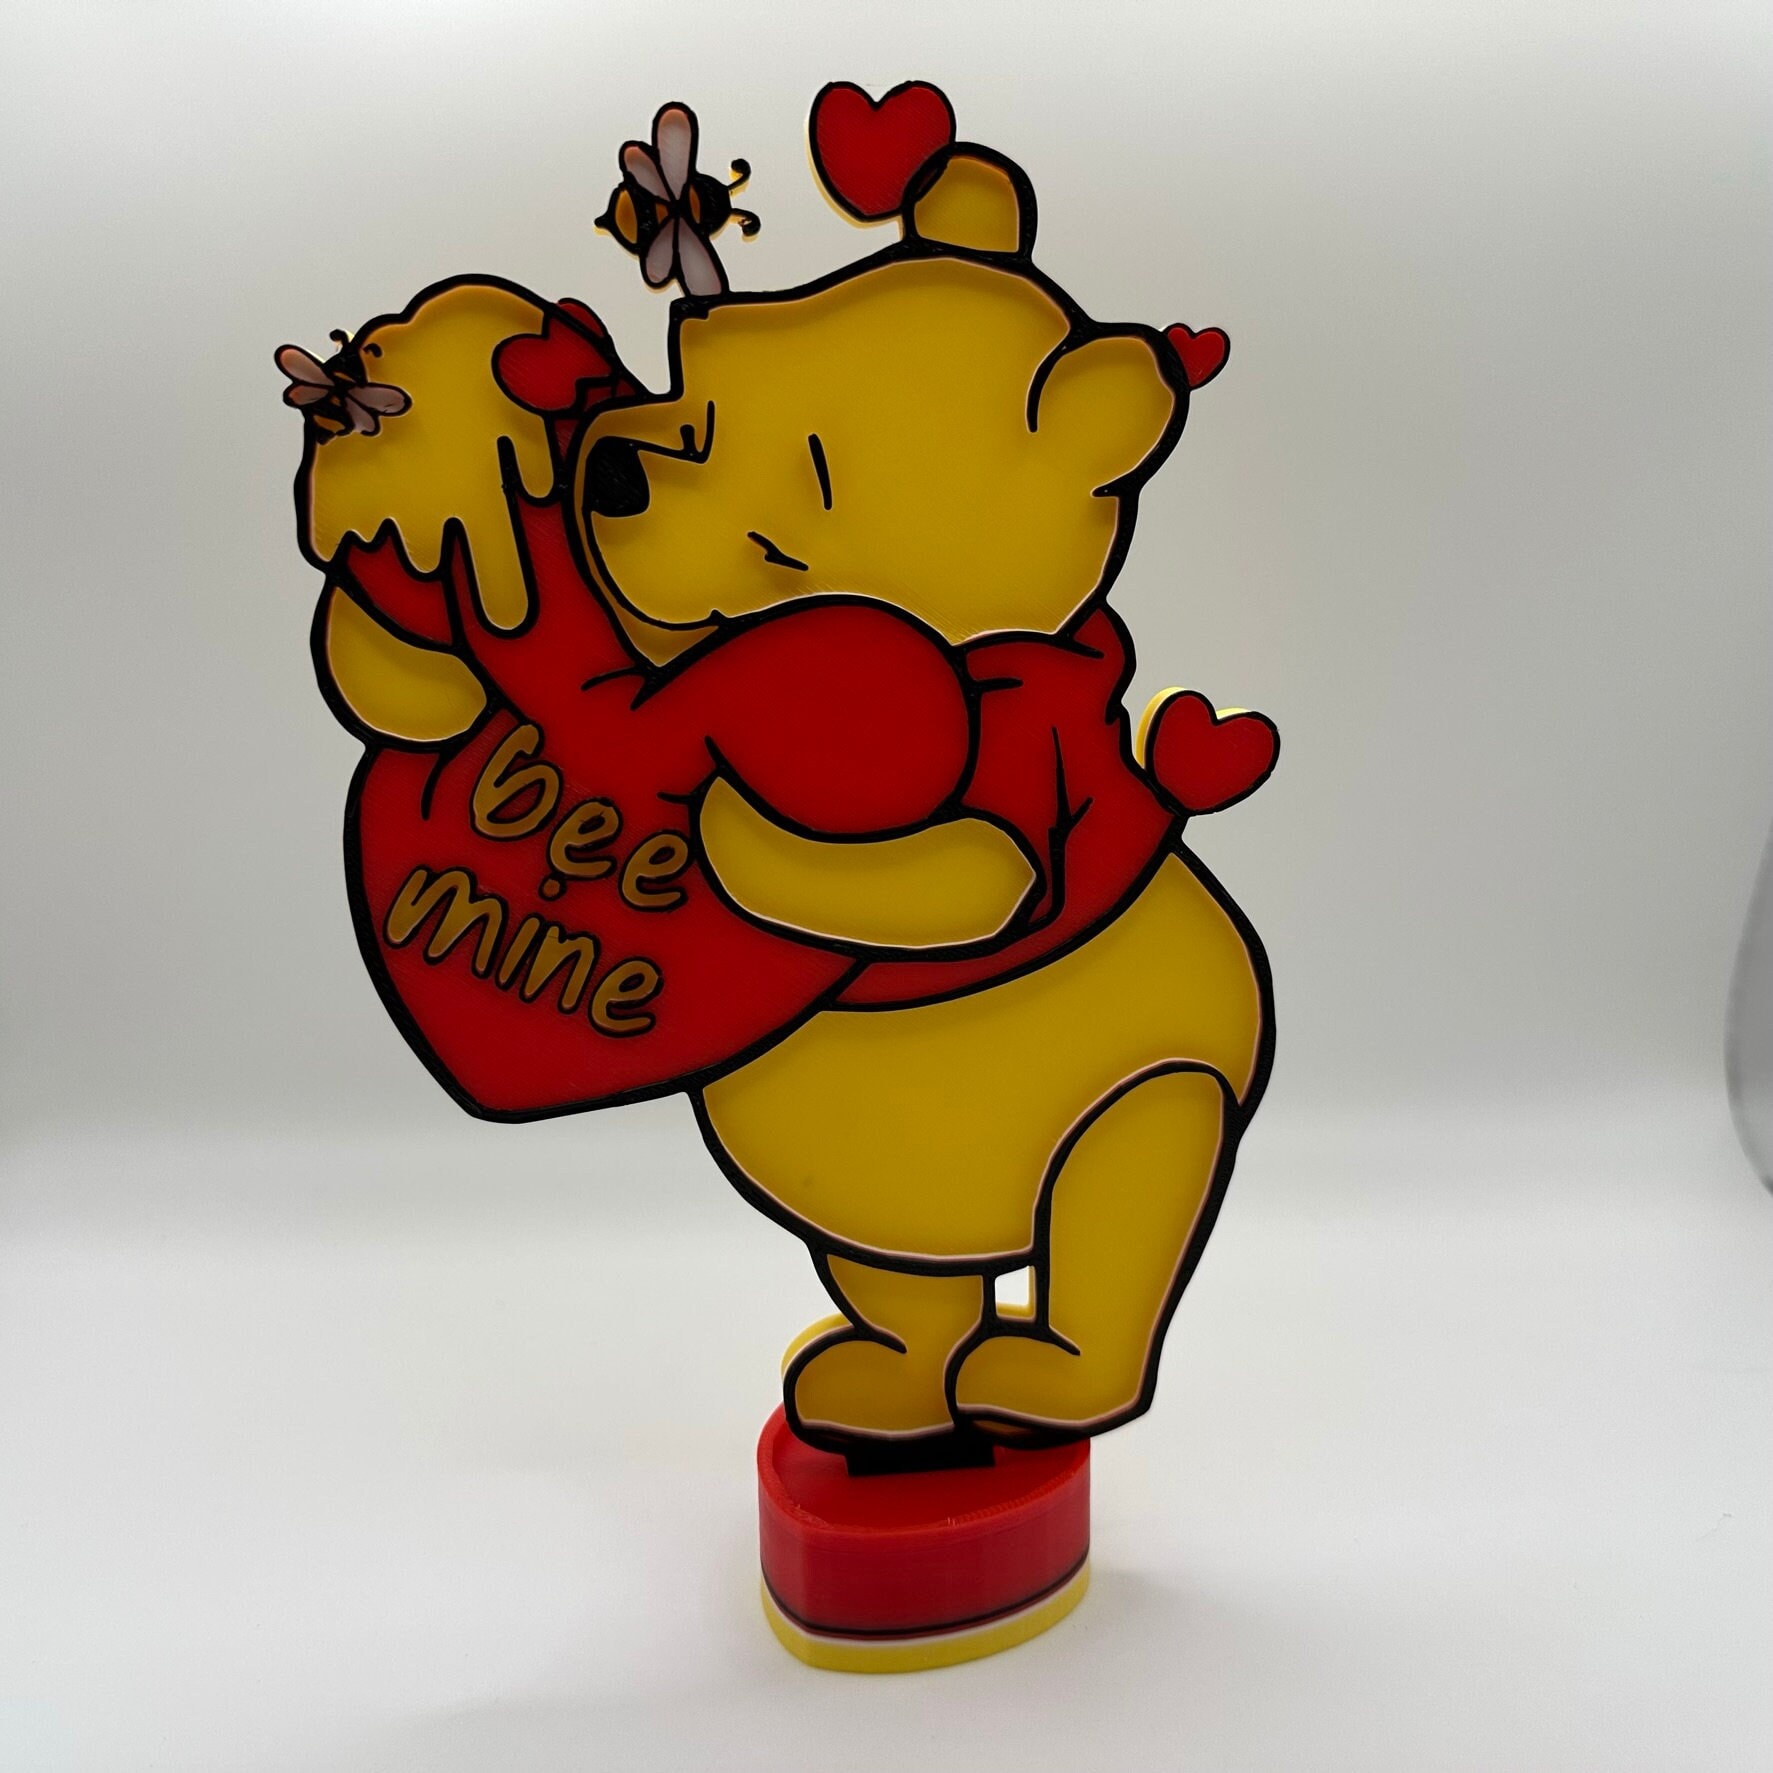 Décoration de la Saint-Valentin mignonne avec Winnie l'ourson Bee Mine  imprimée en 3D -  France